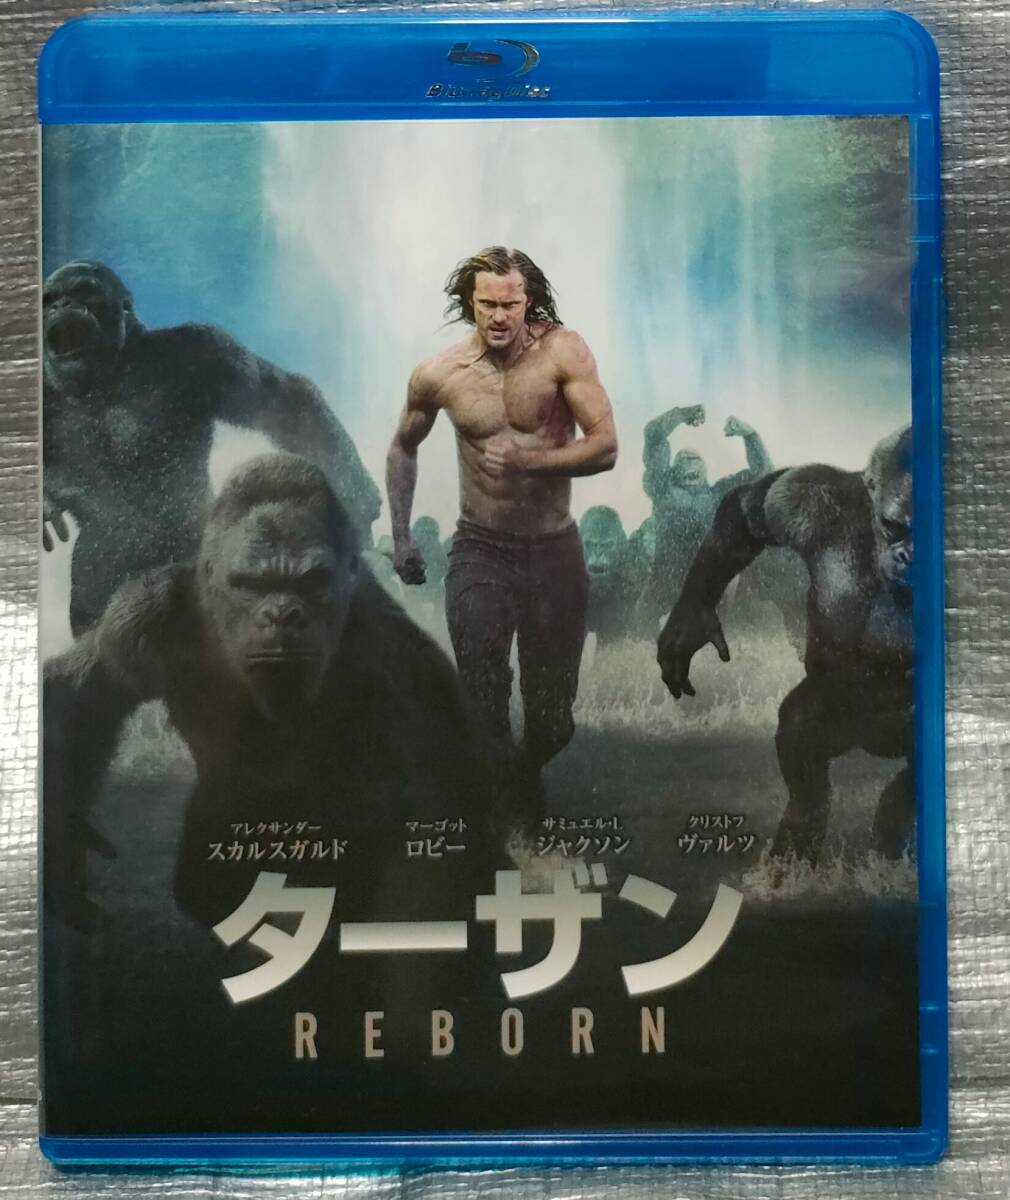 0[1 иен старт * суммировать * включение в покупку возможность ] Blu-ray&DVD[ Tarzan ]arek Thunder * Skull sgarudoma-goto* лобби западное кино Blue-ray 